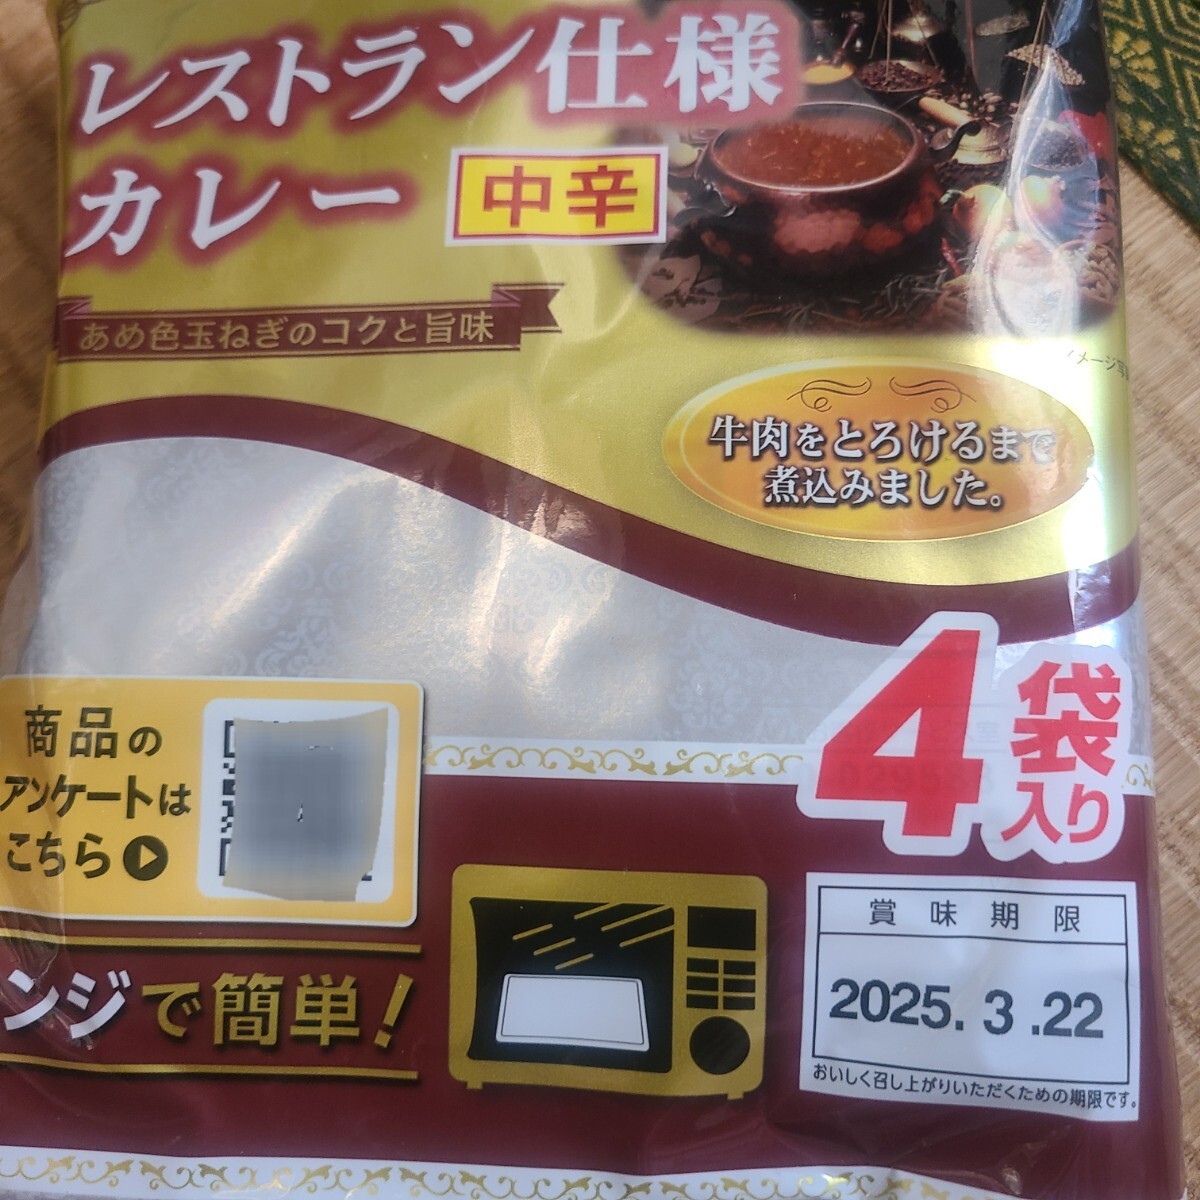 レストラン仕様カレー中辛8食セット レトルトカレー 日本ハム 送料無料